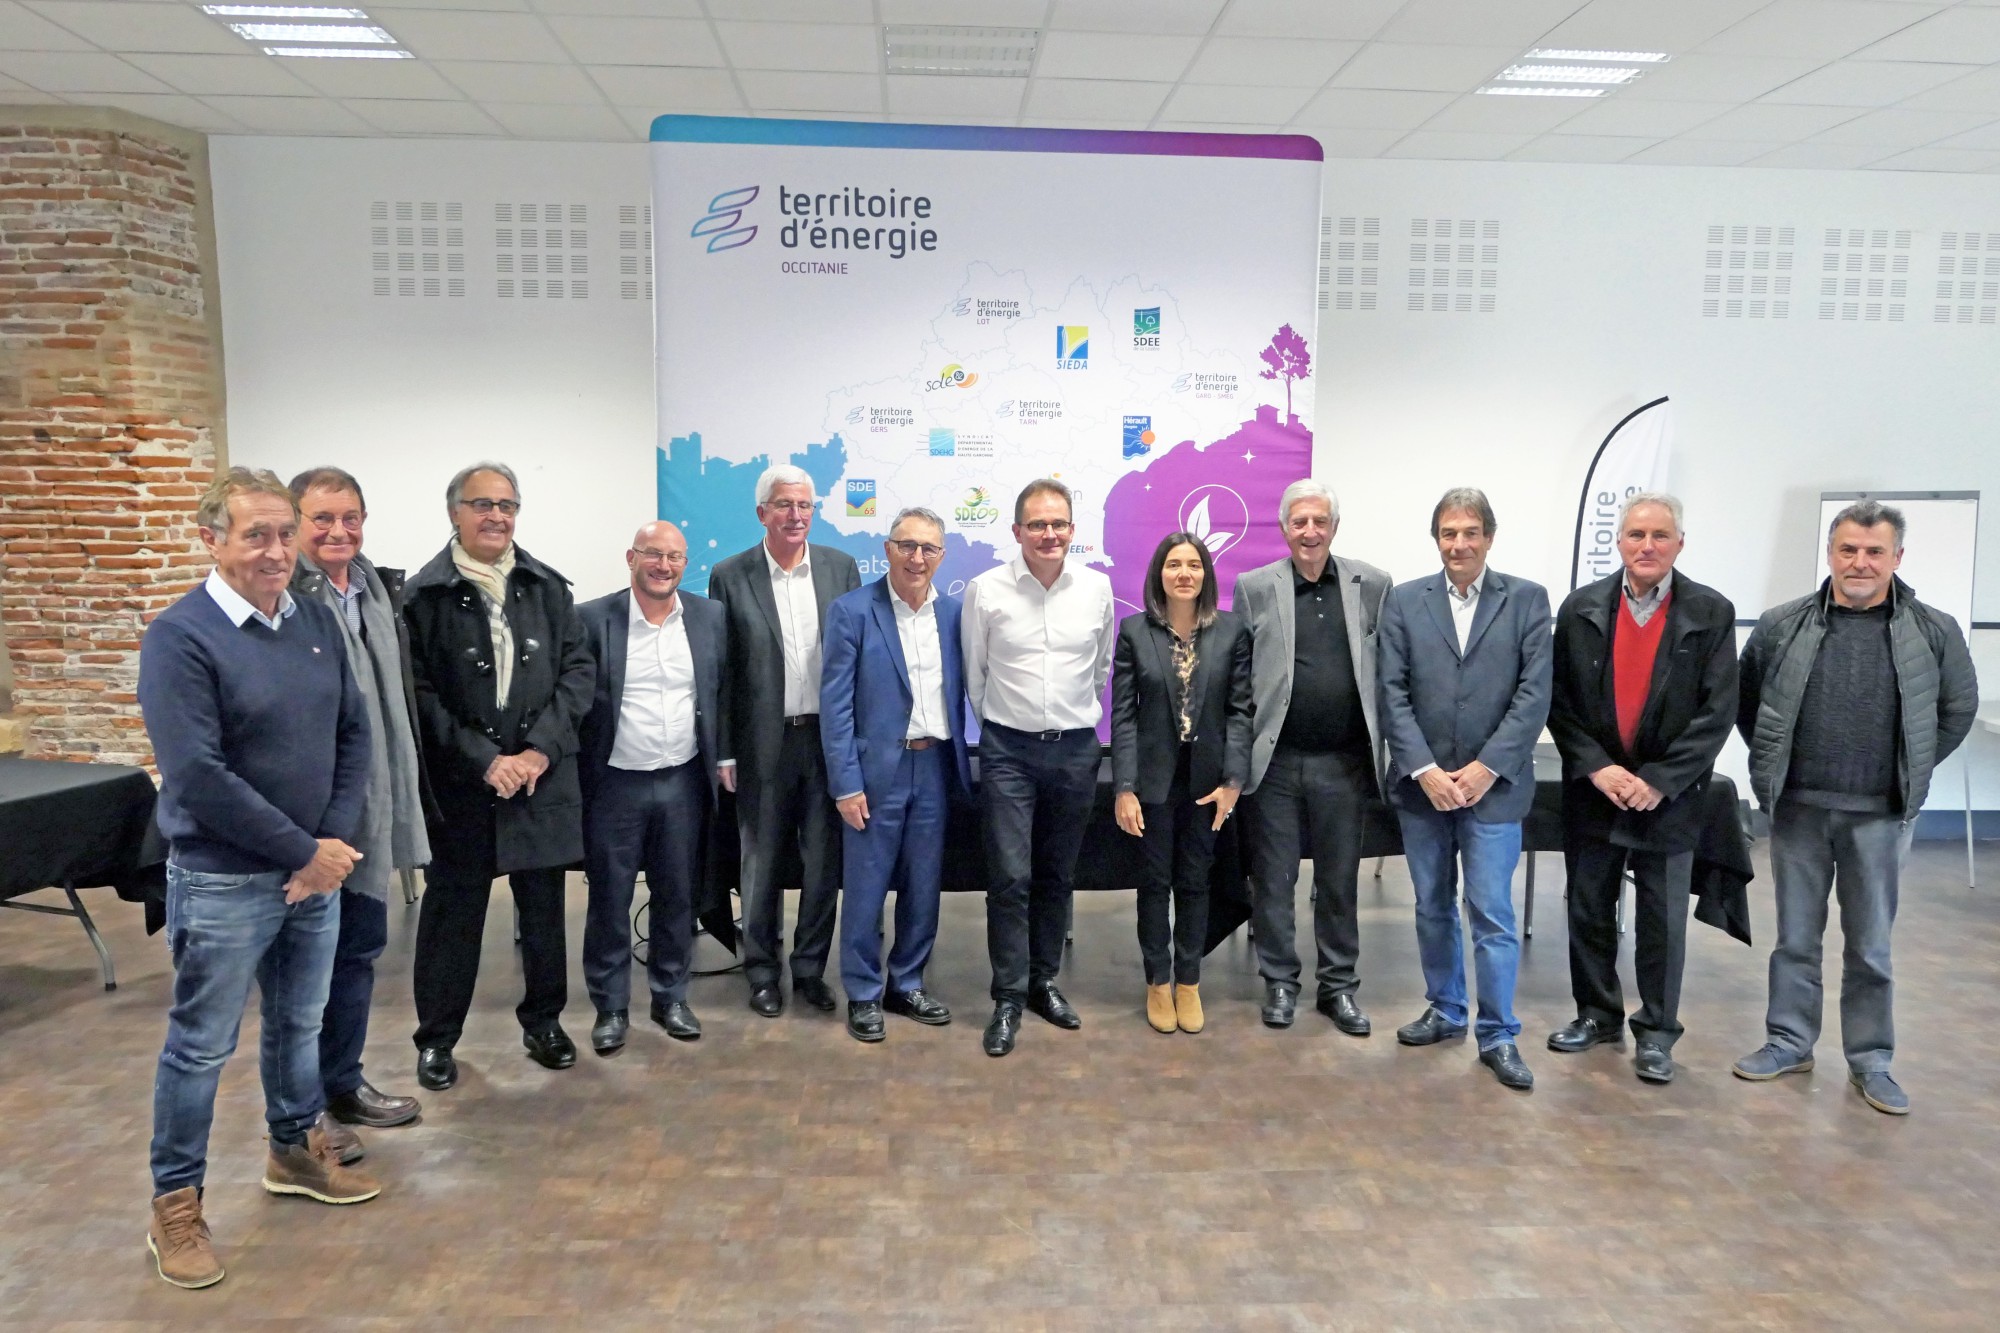 Haute-Garonne - Territoire d'Energie Occitanie adopte plusieurs résolutions en faveur de la transition énergétique